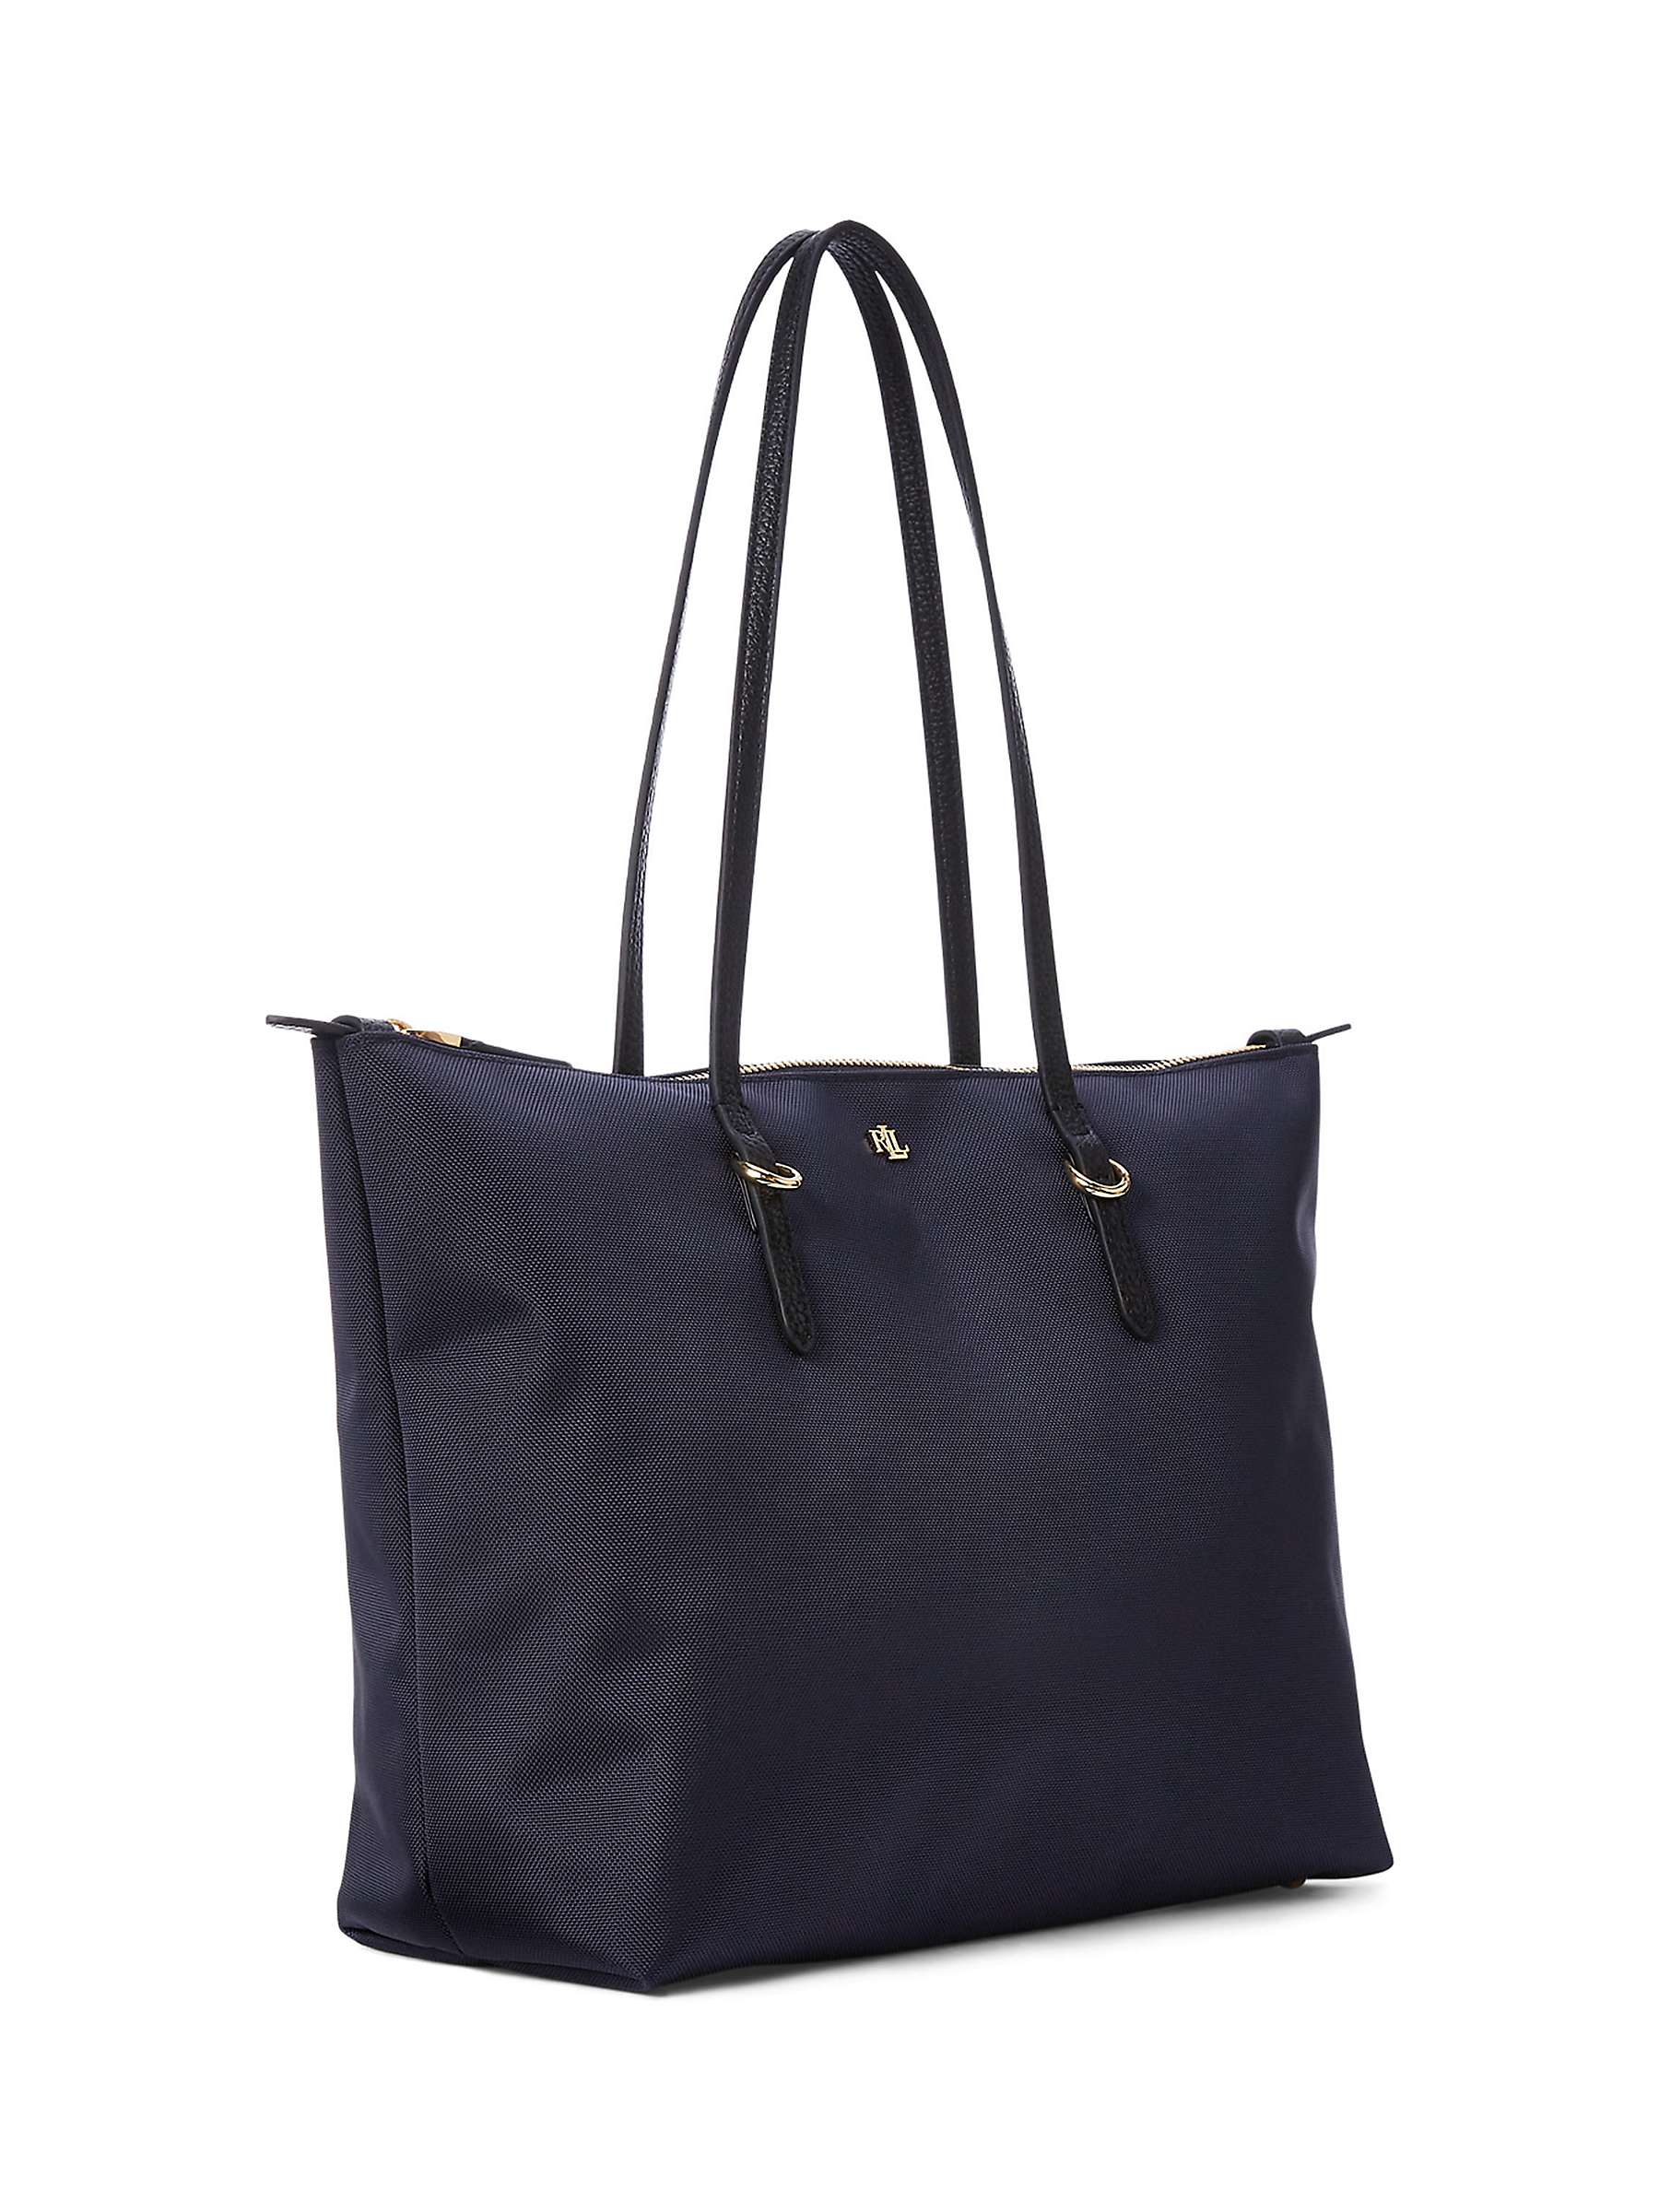 Buy Lauren Ralph Lauren Keaton 26 Shopper Bag, French Navy Online at johnlewis.com